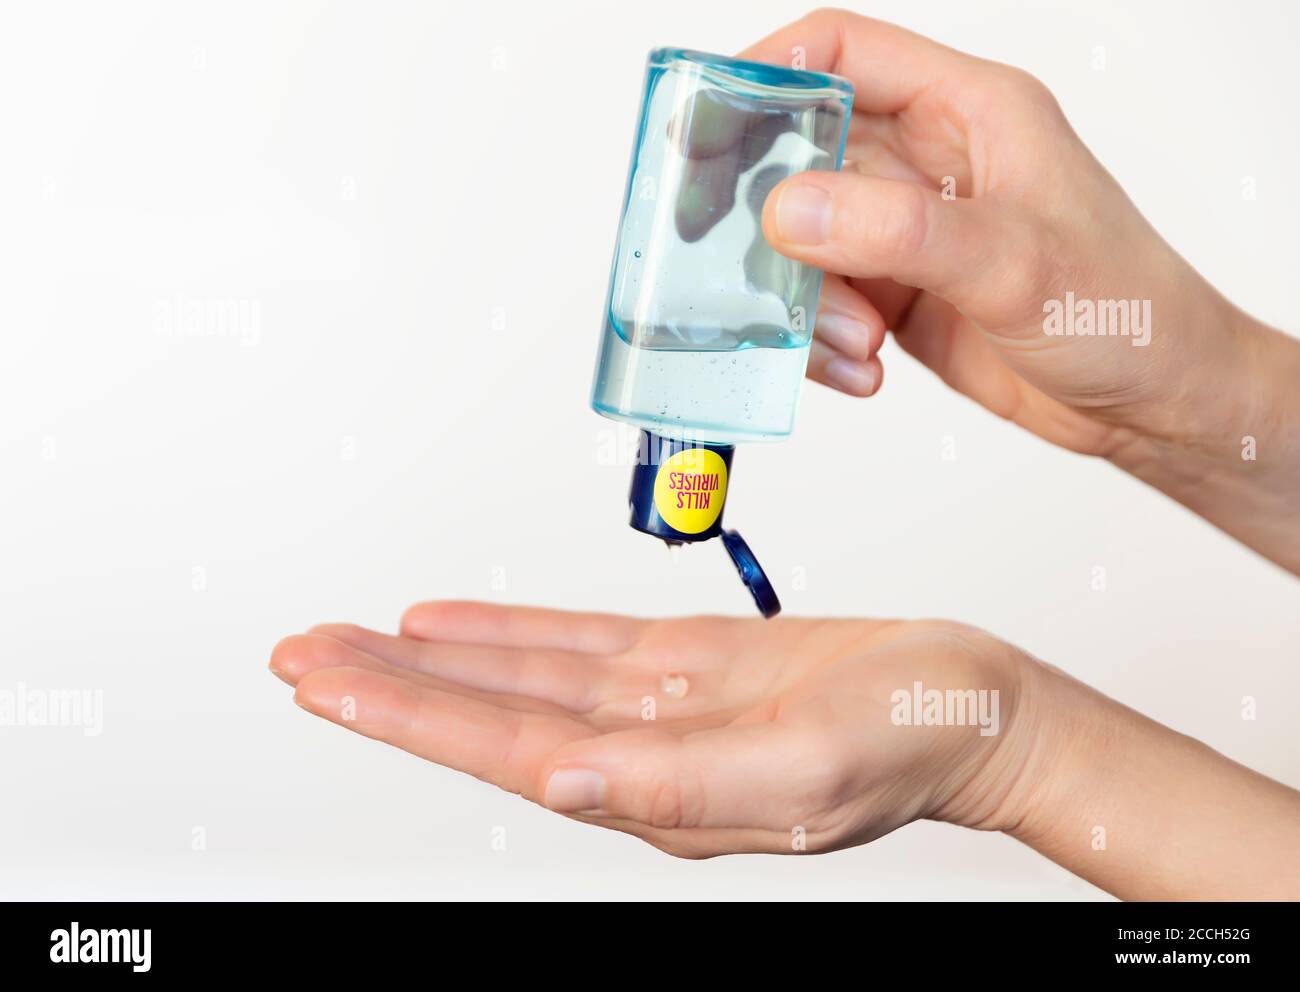 Una persona que sanea las manos con un desinfectante antibacteriano de una botella y previene la propagación de gérmenes, bacterias y virus de la corona. Foto de stock